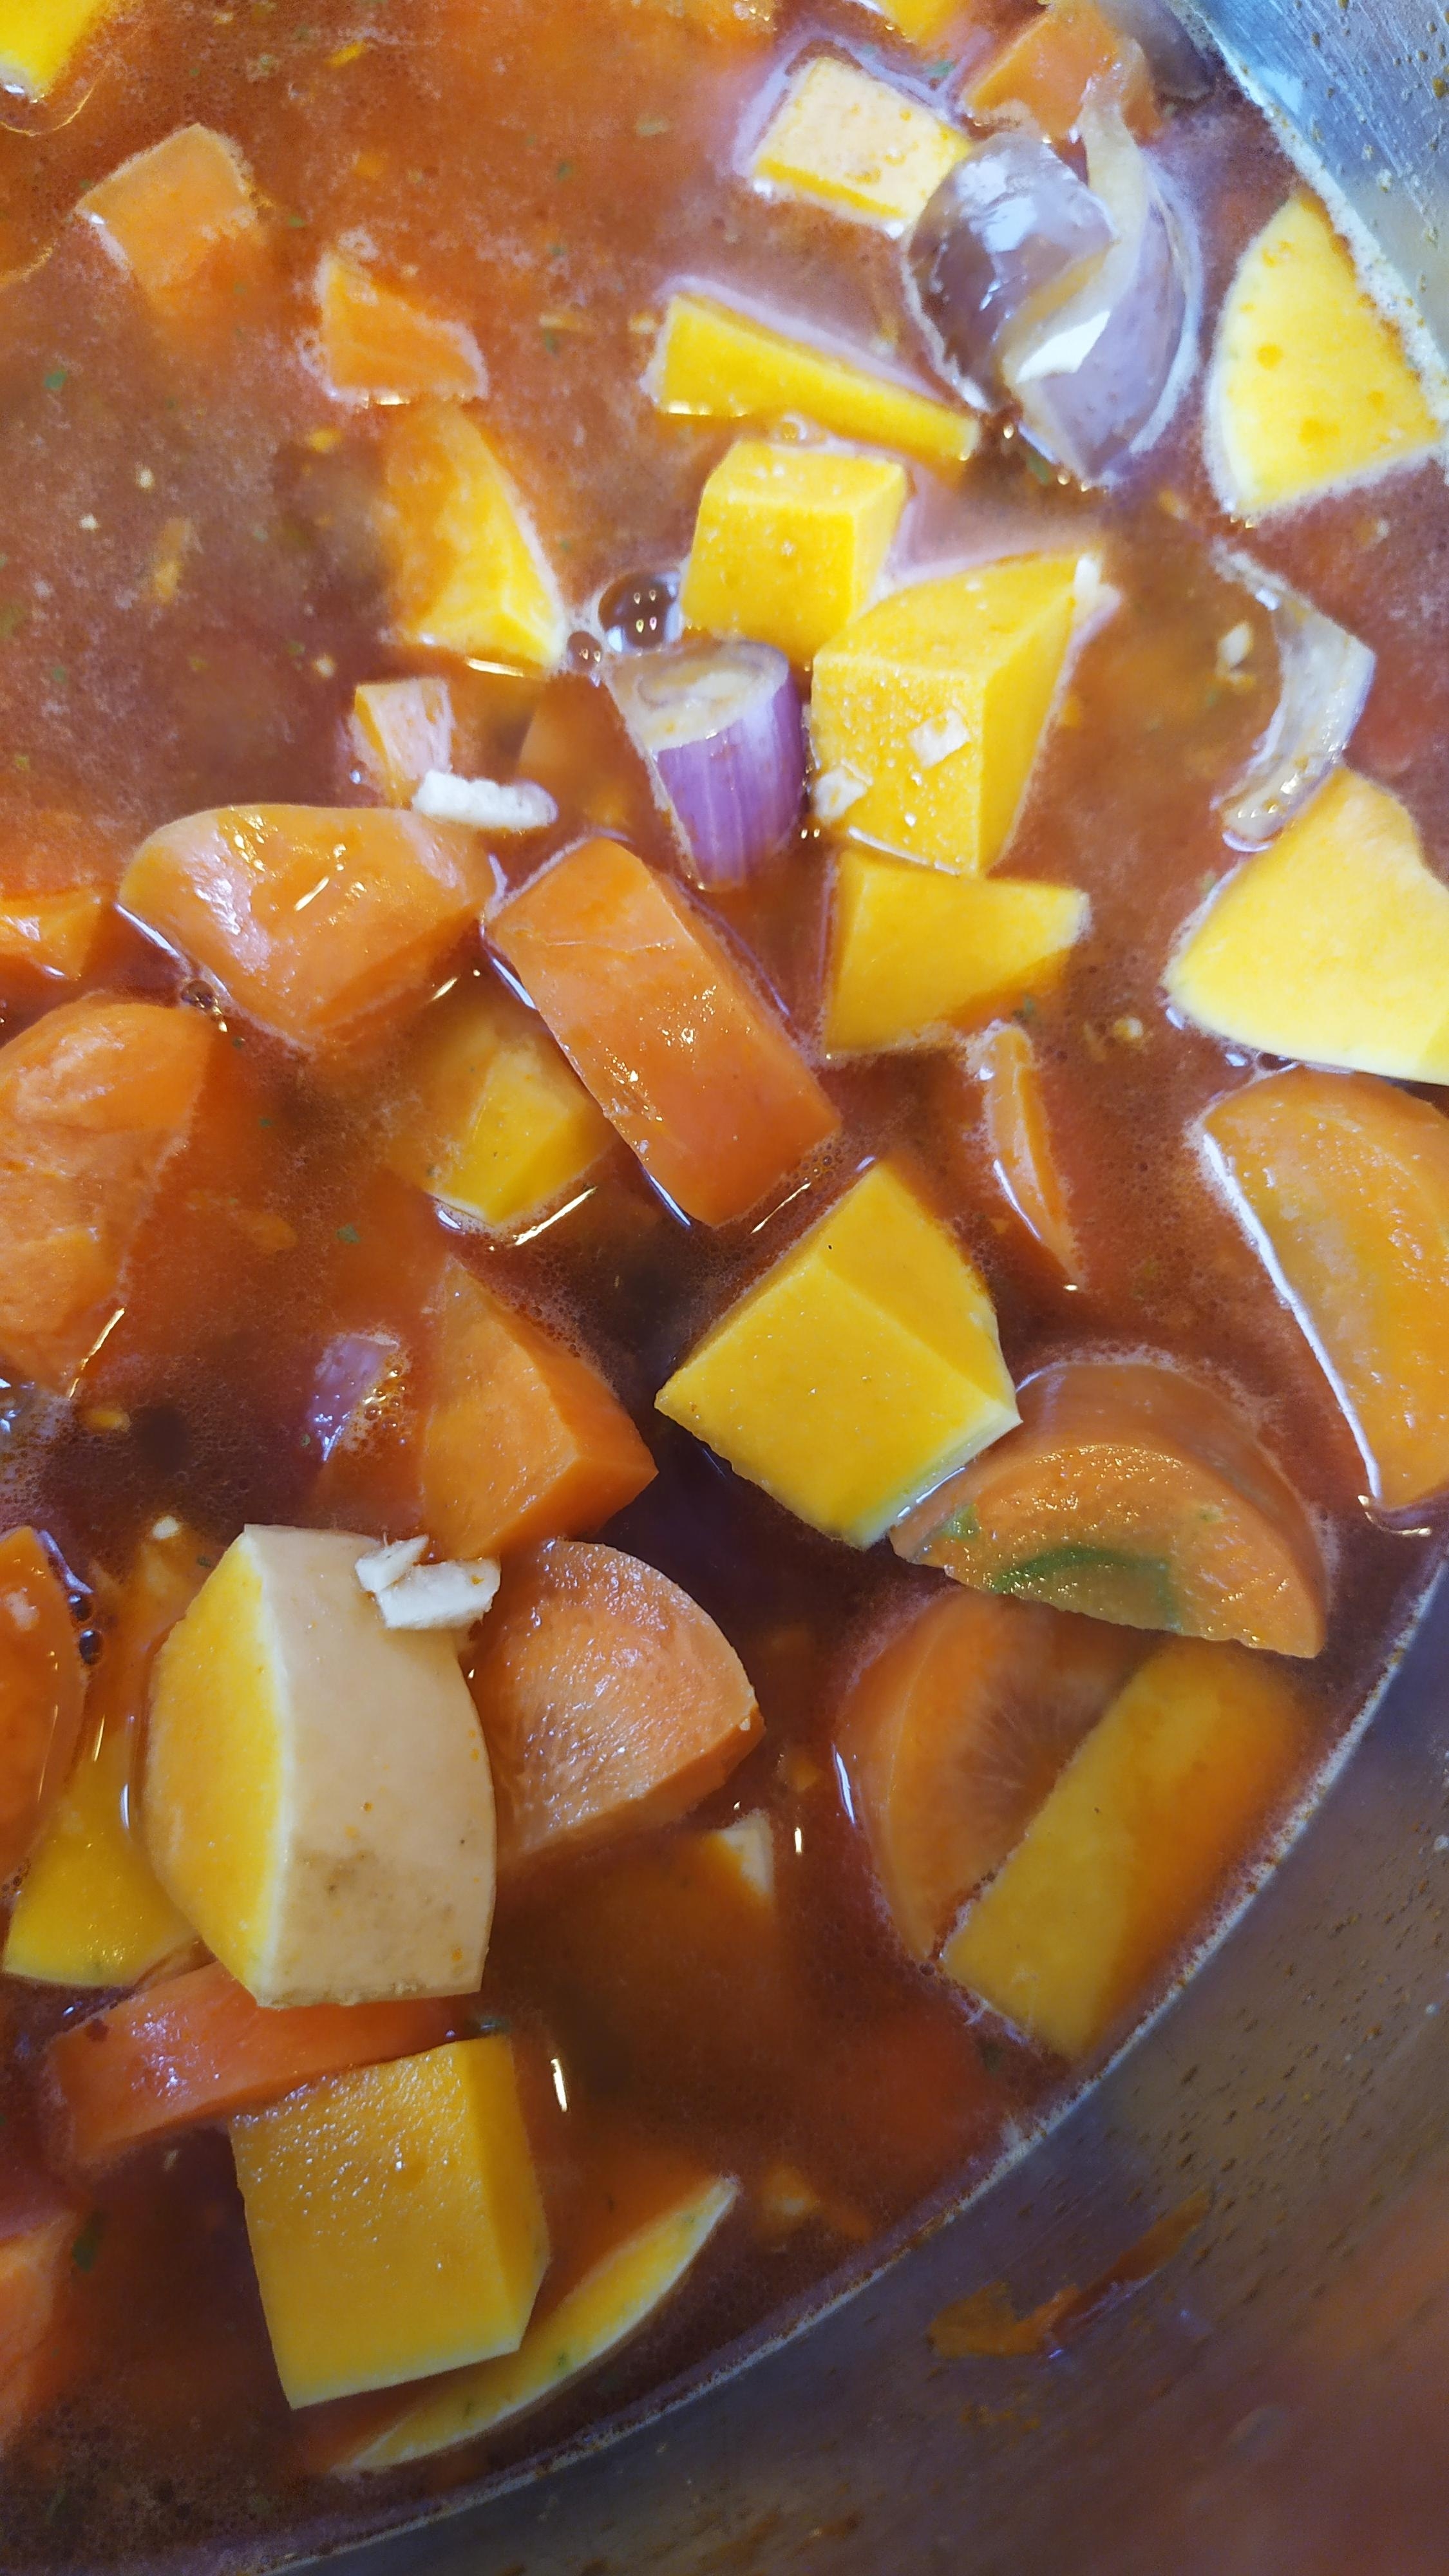 Sieht aus wie Herbst mit Geschmack: Möhren-Kokossuppe mit Kürbis, Ingwer + O-Saft #kürbisrezept #vegan #pflanzenkoch